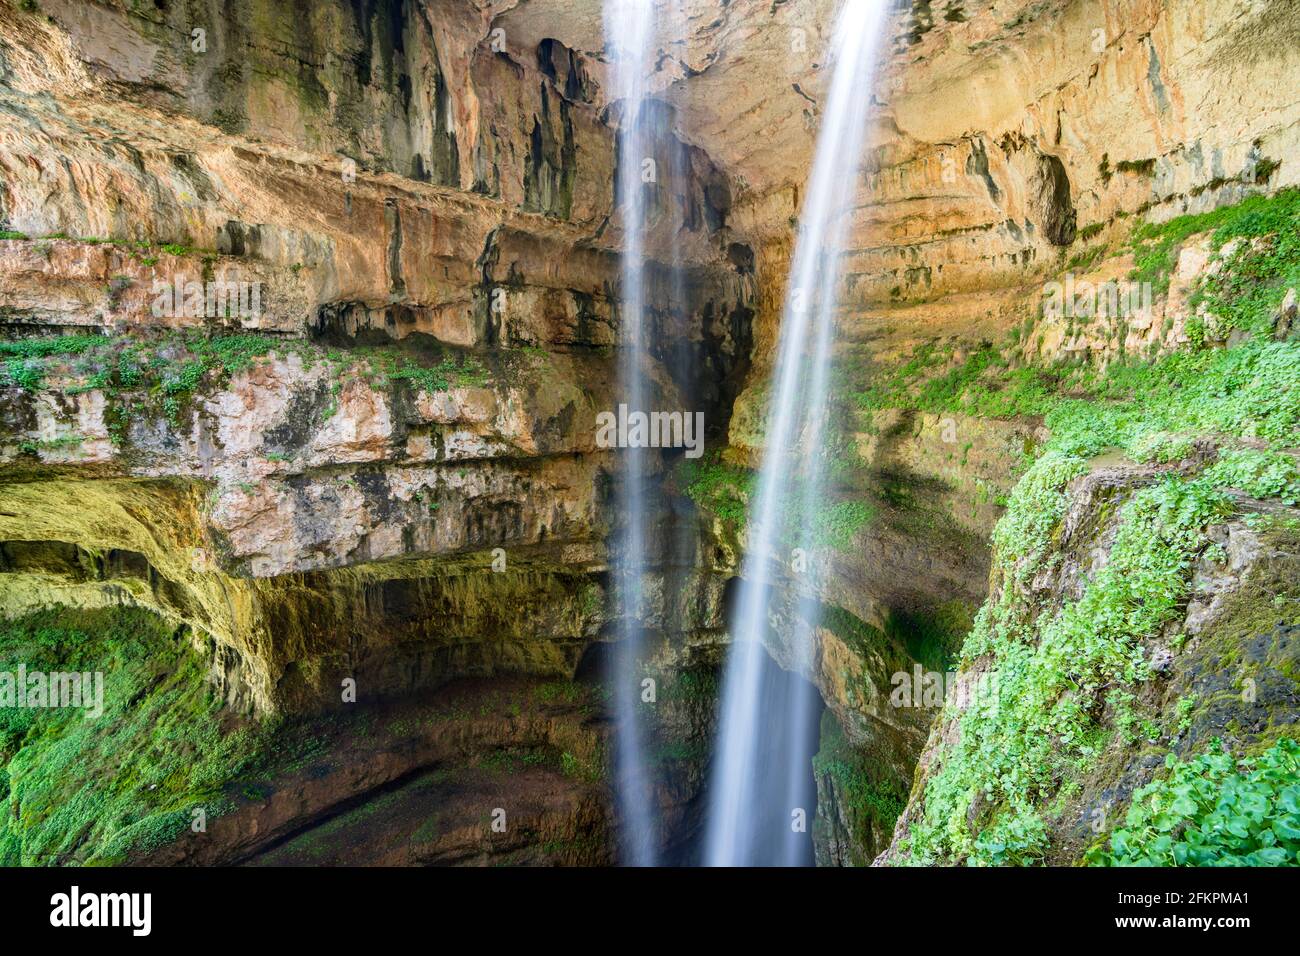 Cascade de la gorge de Baatara avec deux ruisseaux, Tannourine, Liban Banque D'Images